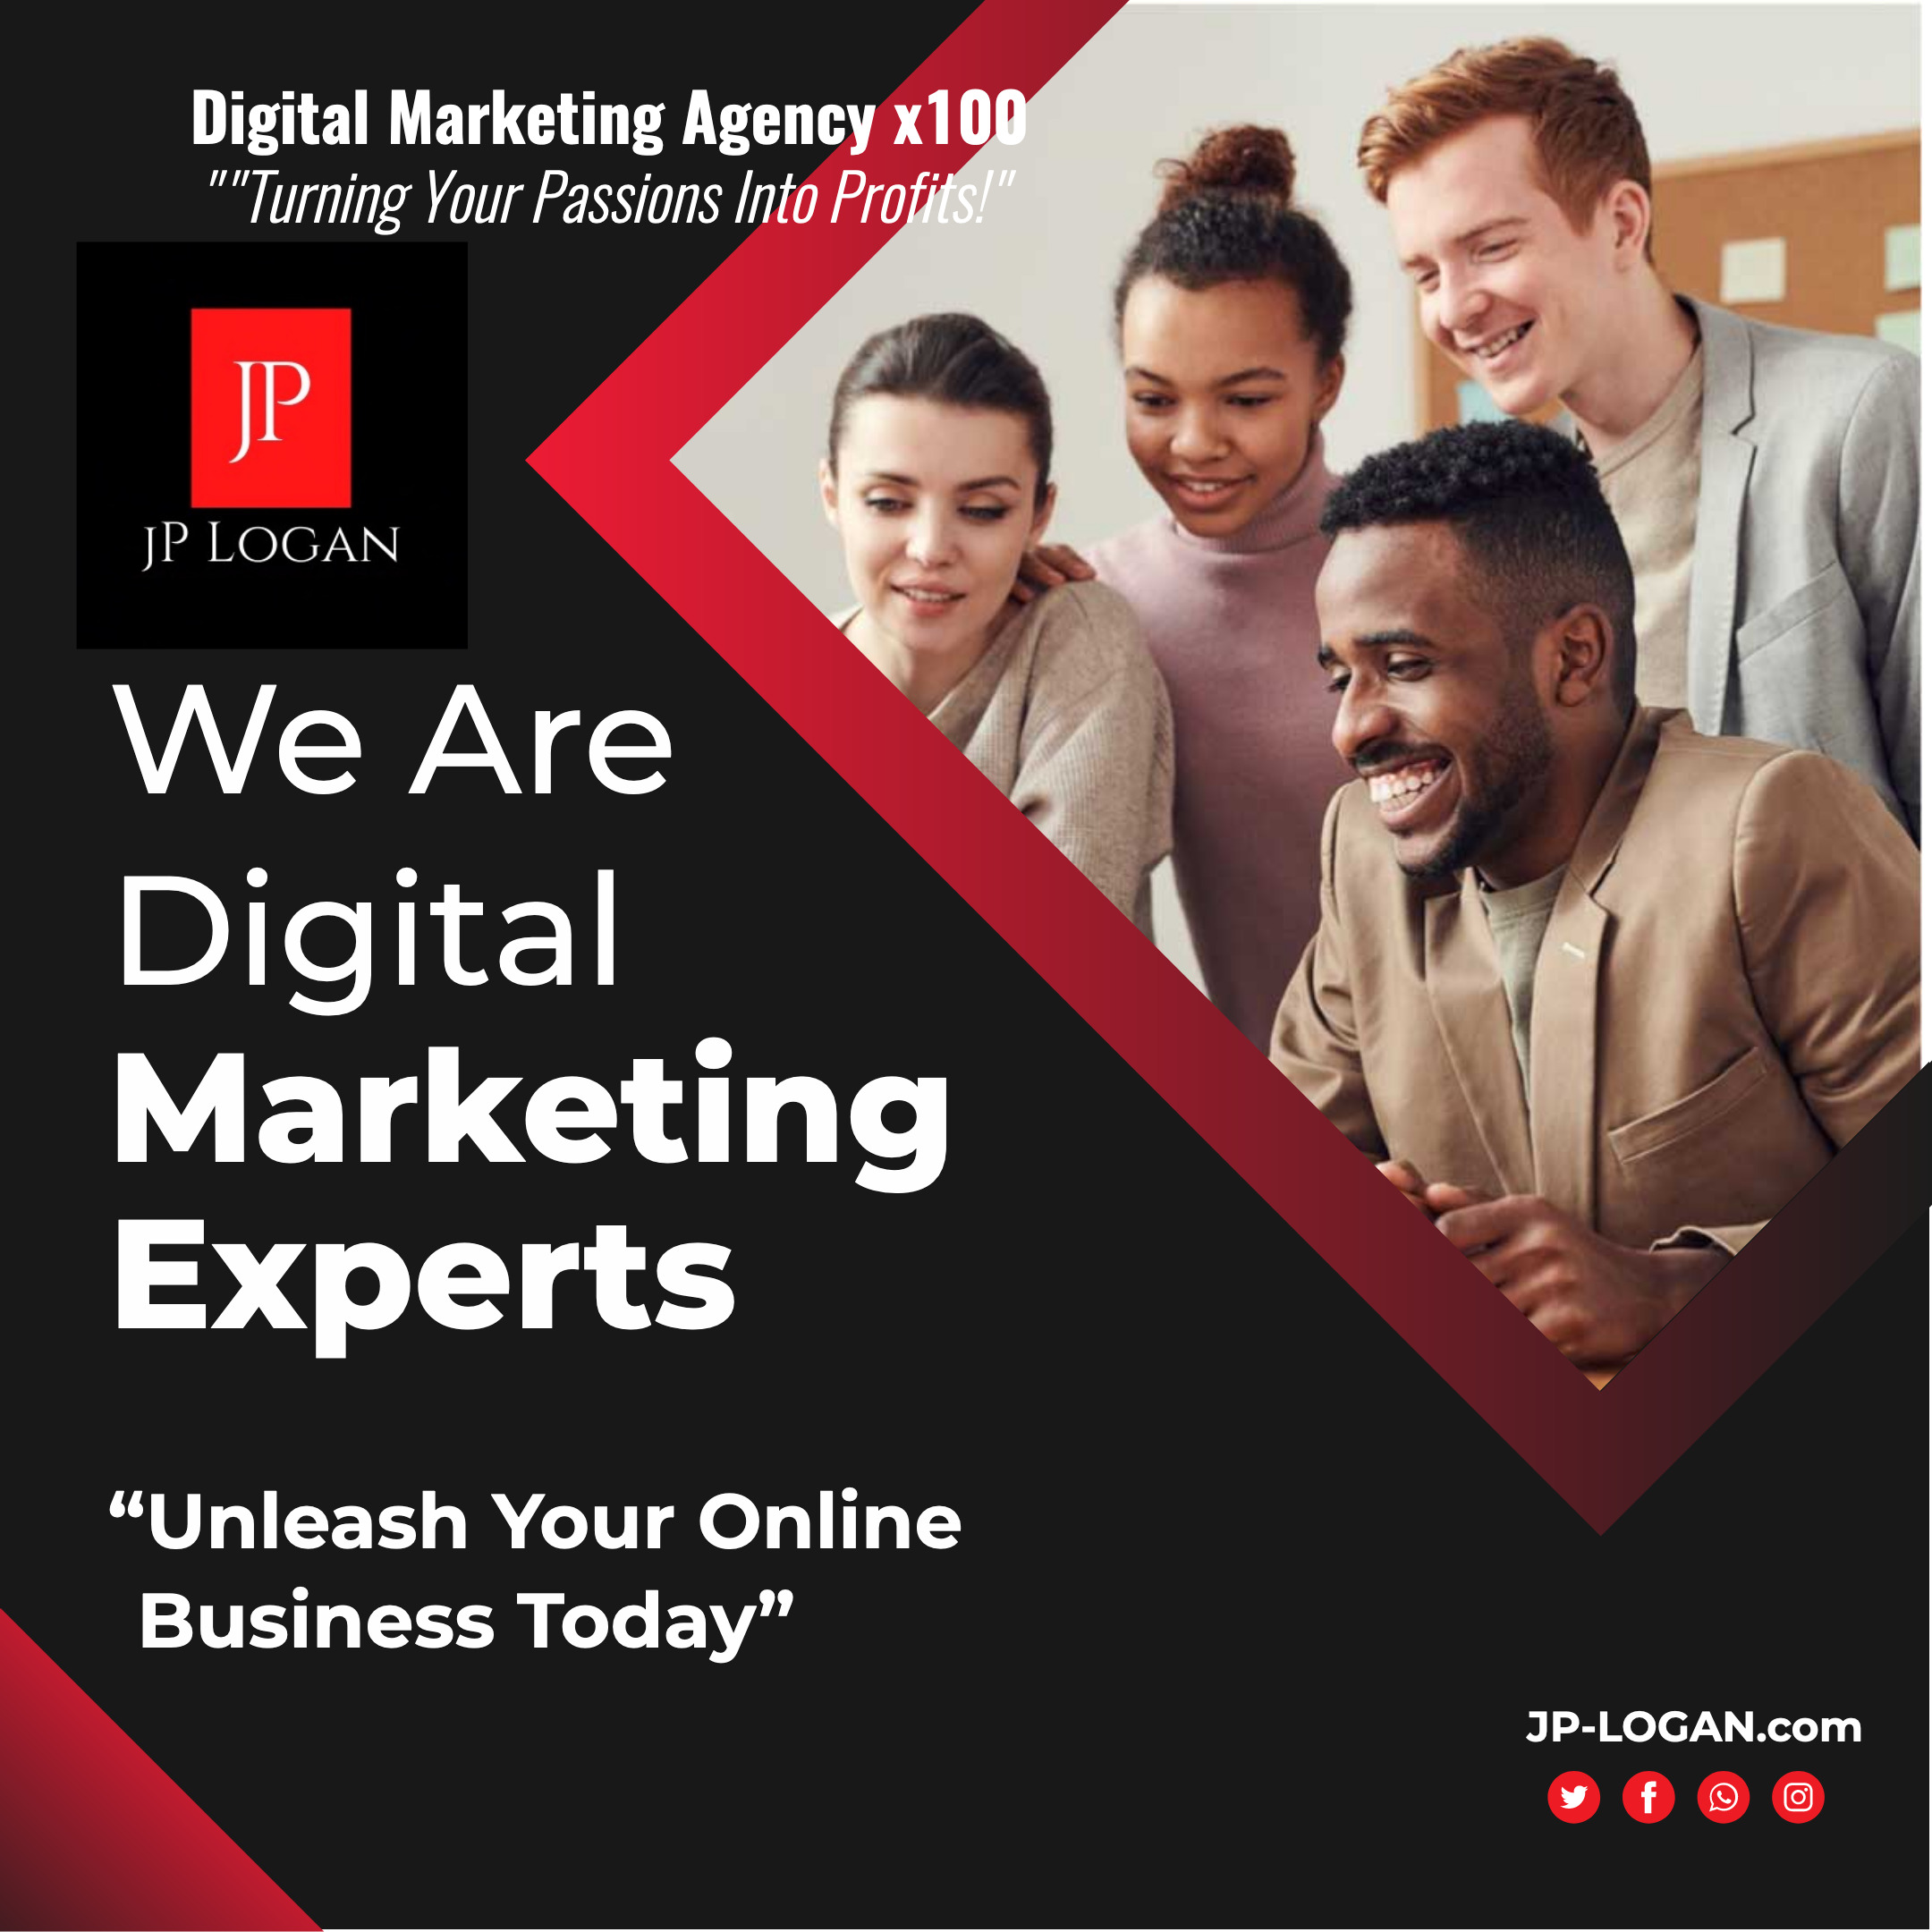 JPLogan-Digital-Marketing-Agency